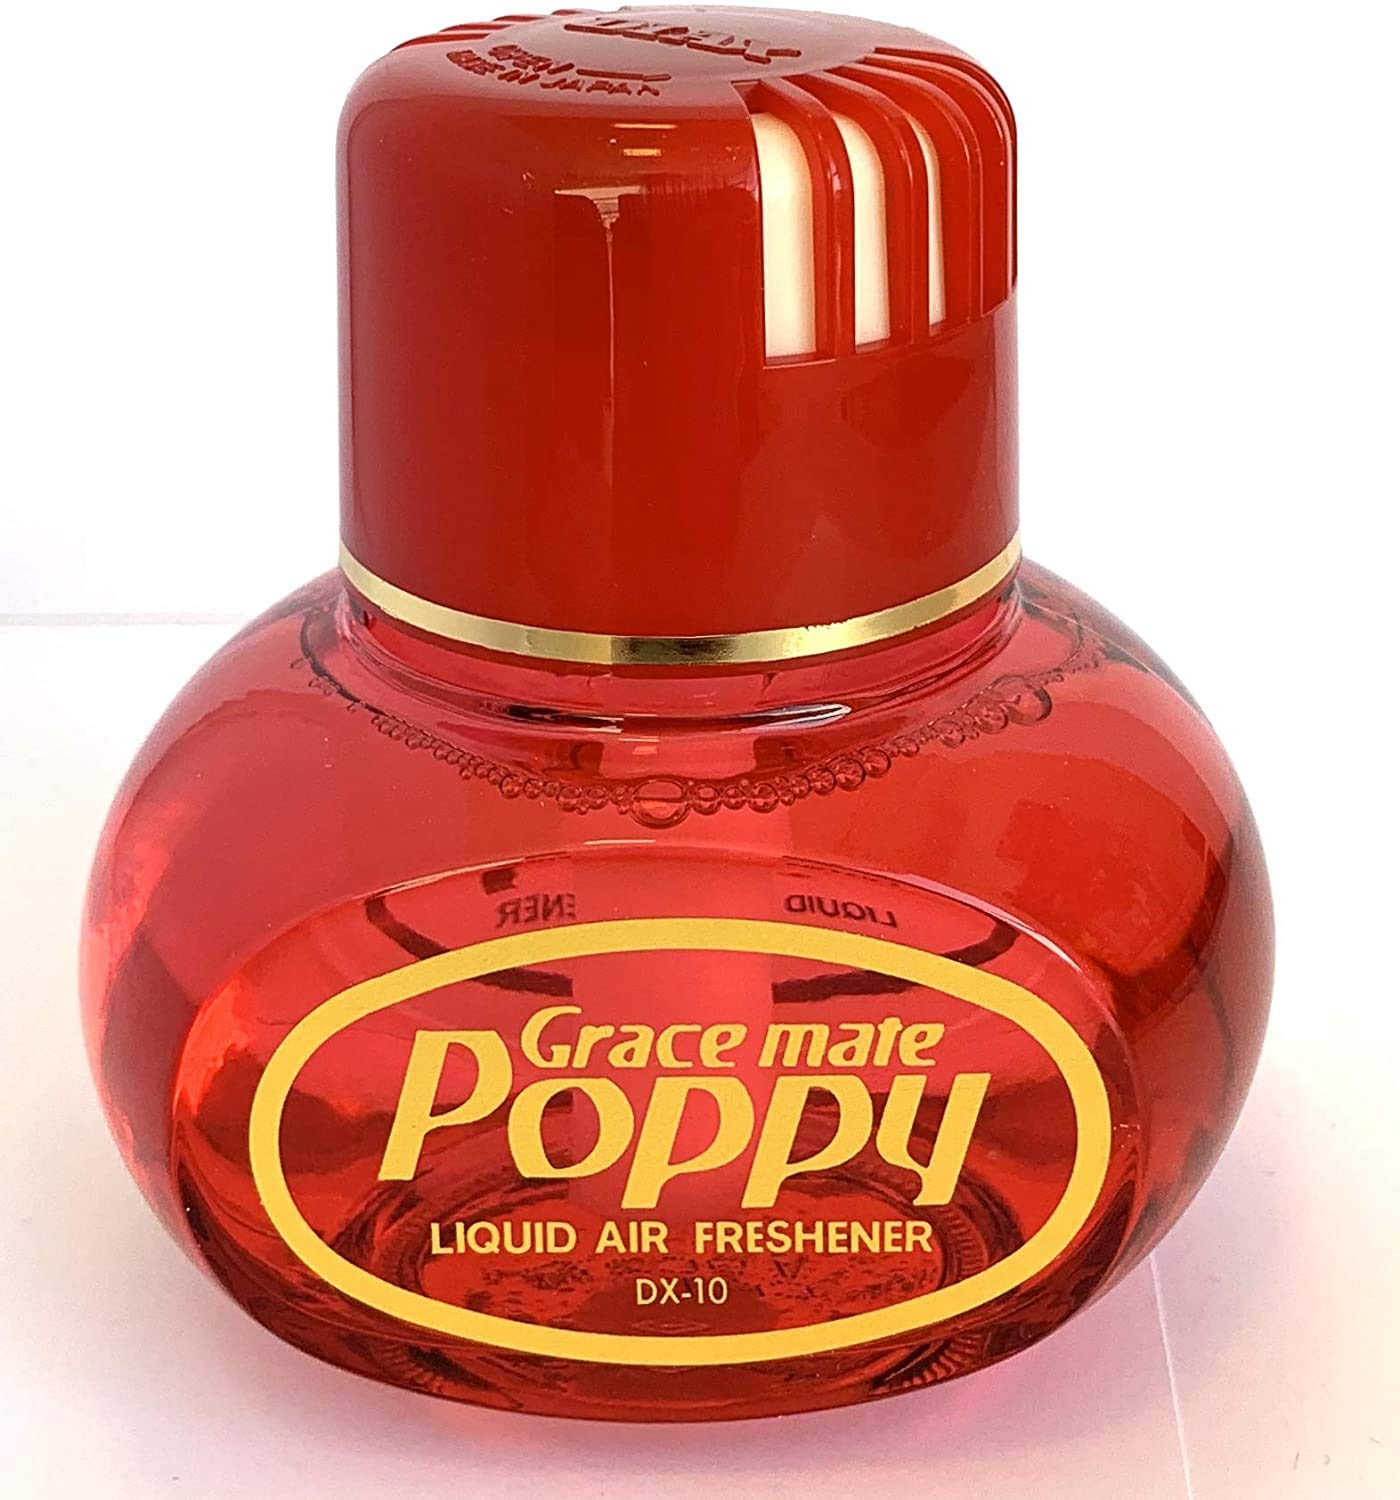 Original Poppy Grace Mate Lufterfrischer (Kirsche, ohne Beleuchtung) (150 ml), Raum-Duft für die Wohnung, LKW, Auto - RaumParfum beseitig unangenehme Gerüche von Grace Mate Poppy